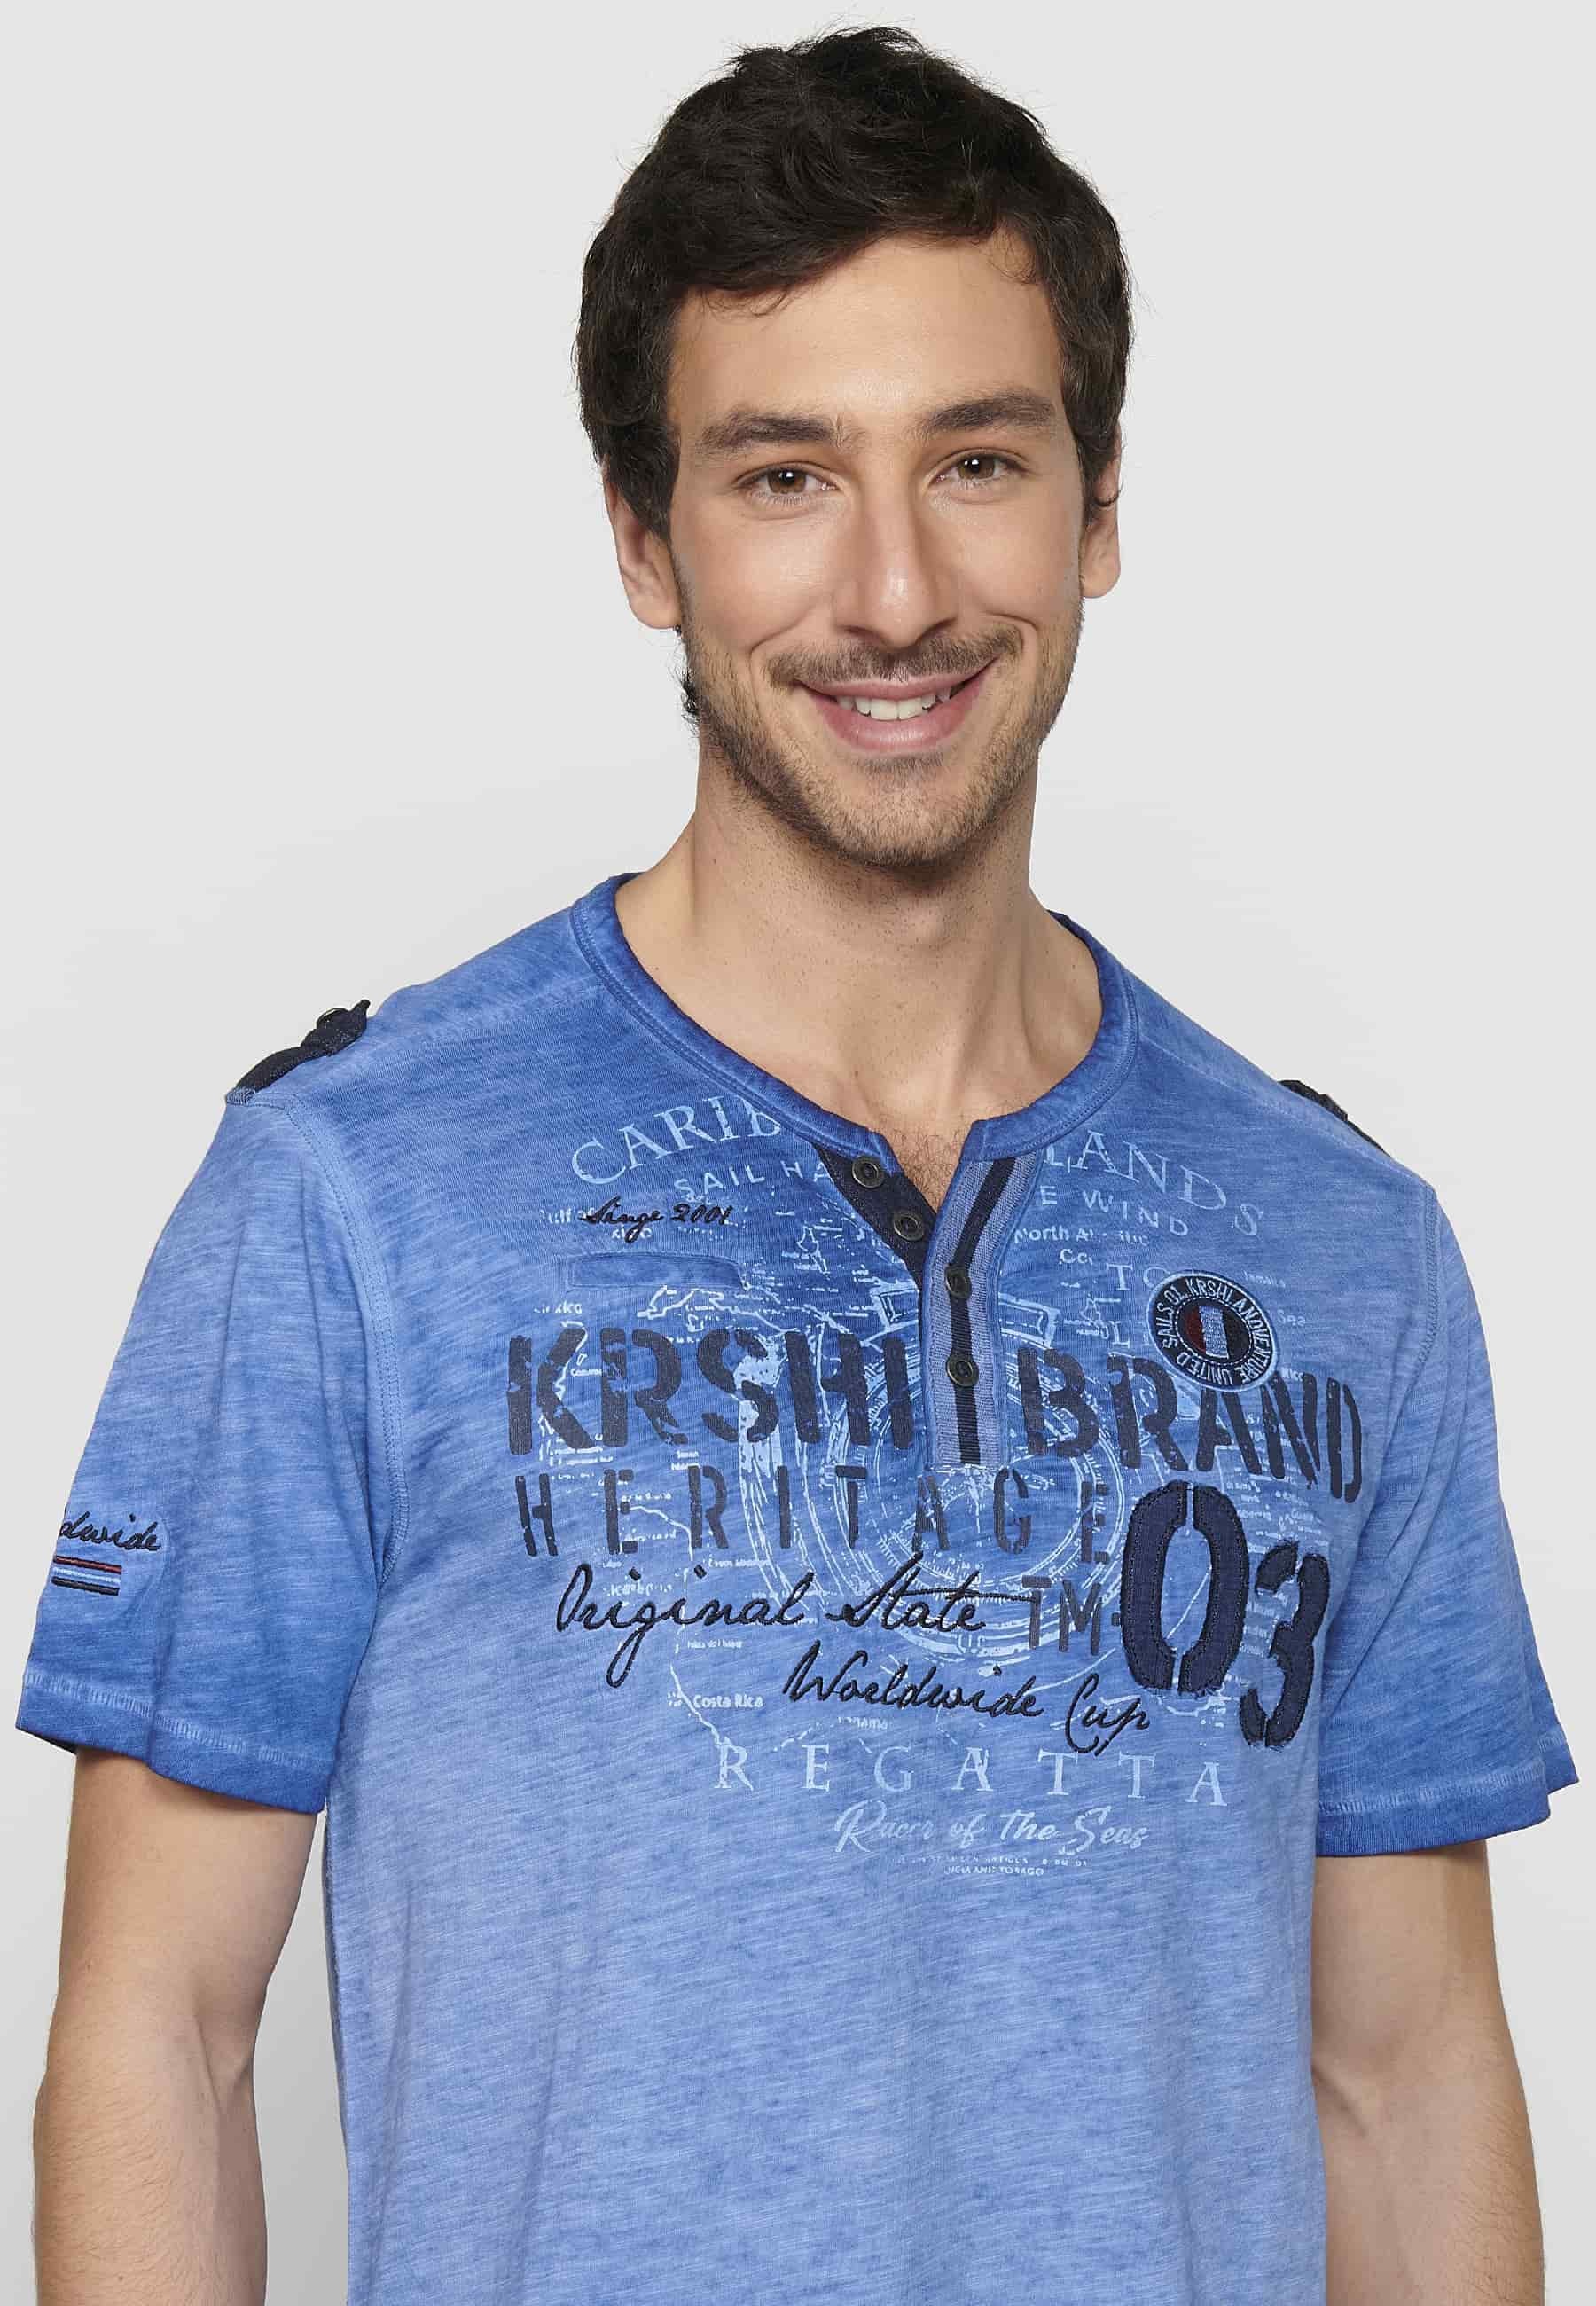 Kurzärmliges Herren-T-Shirt aus Baumwolle mit Rundhalsausschnitt, geknöpfter Öffnung und blau Detail vorne